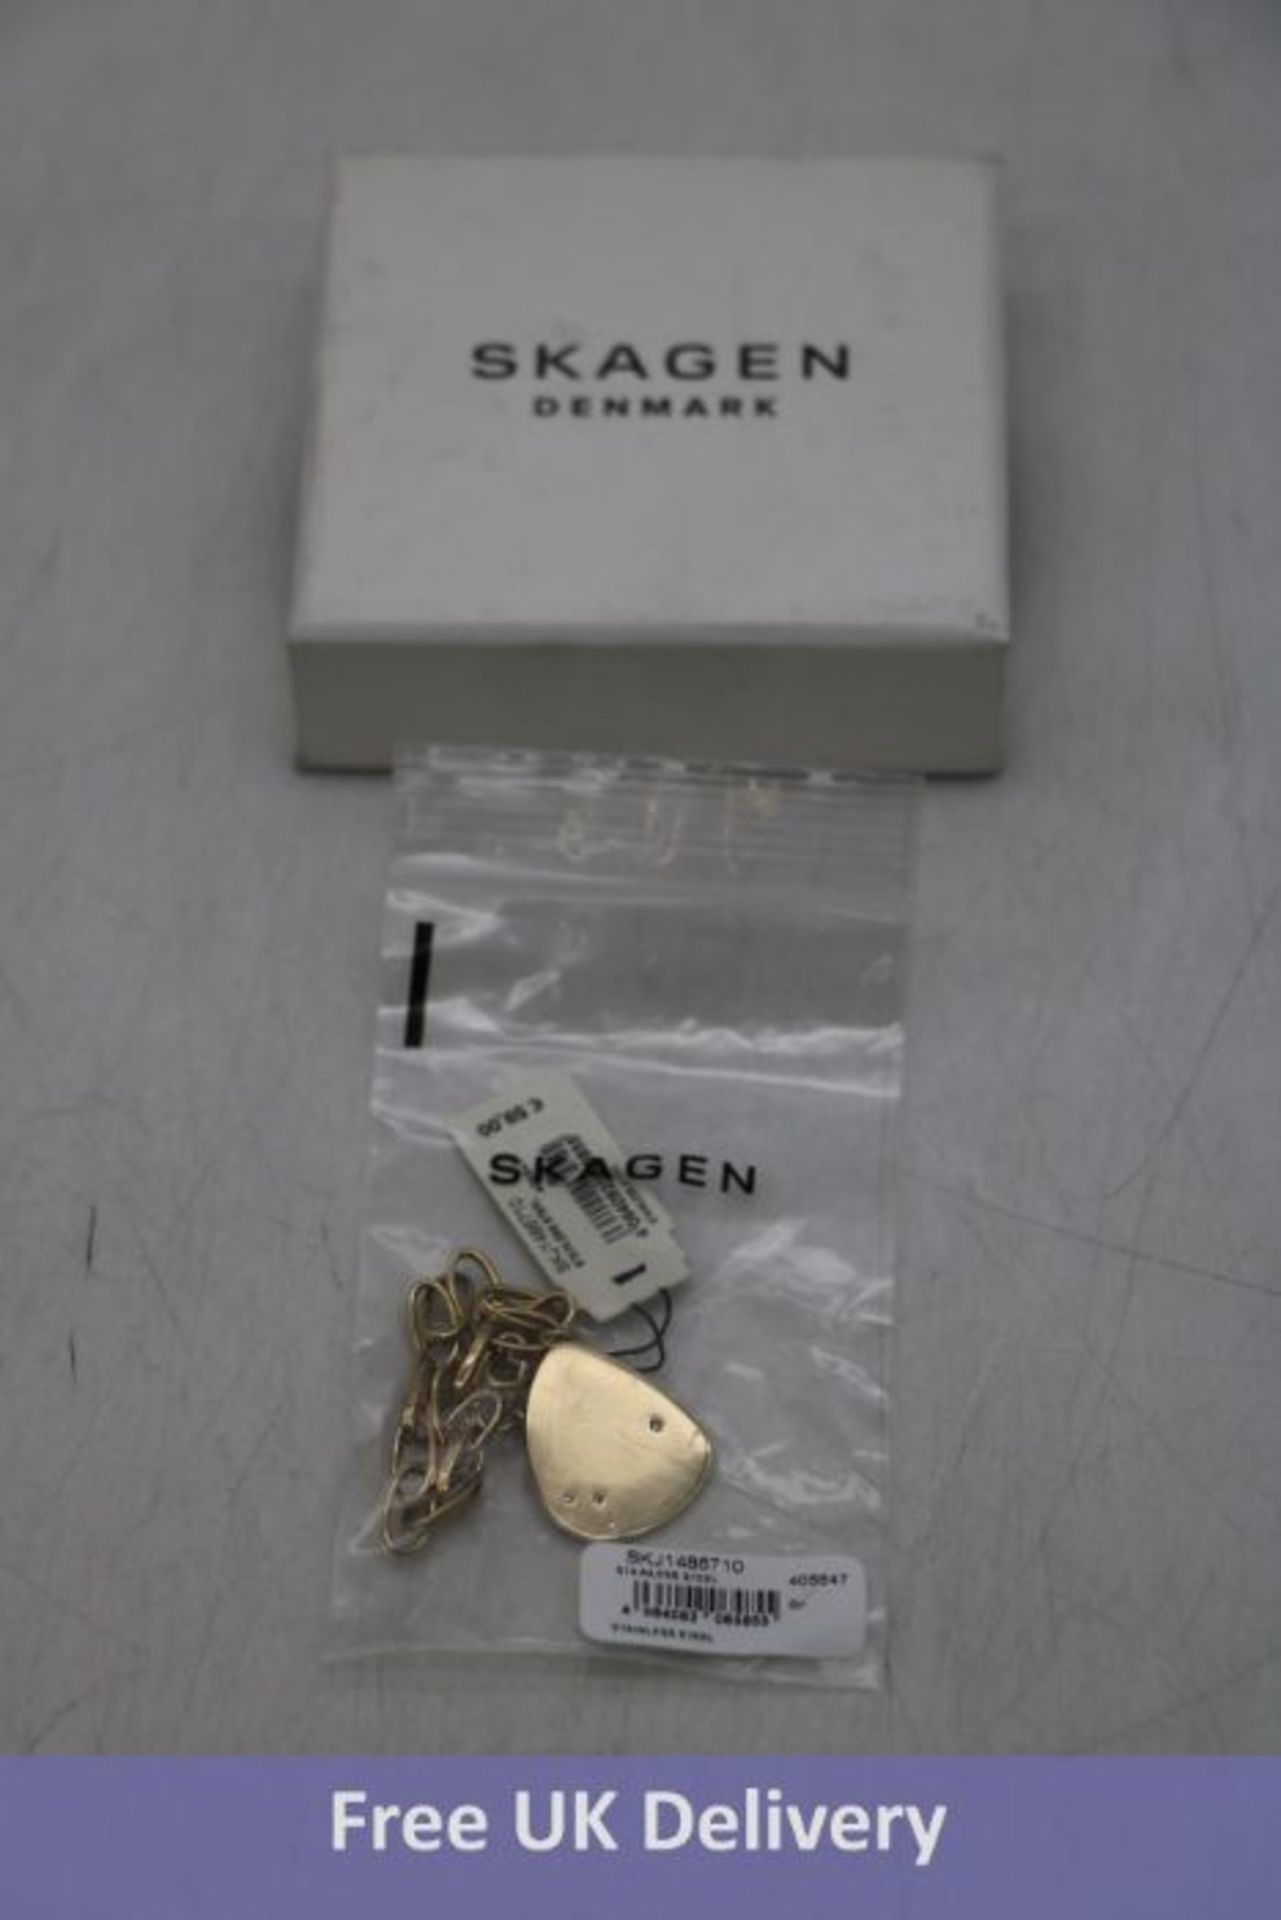 Skagen Denmark Kariana Gold-Tone Stainless Steel Chain Bracelet, 20cm